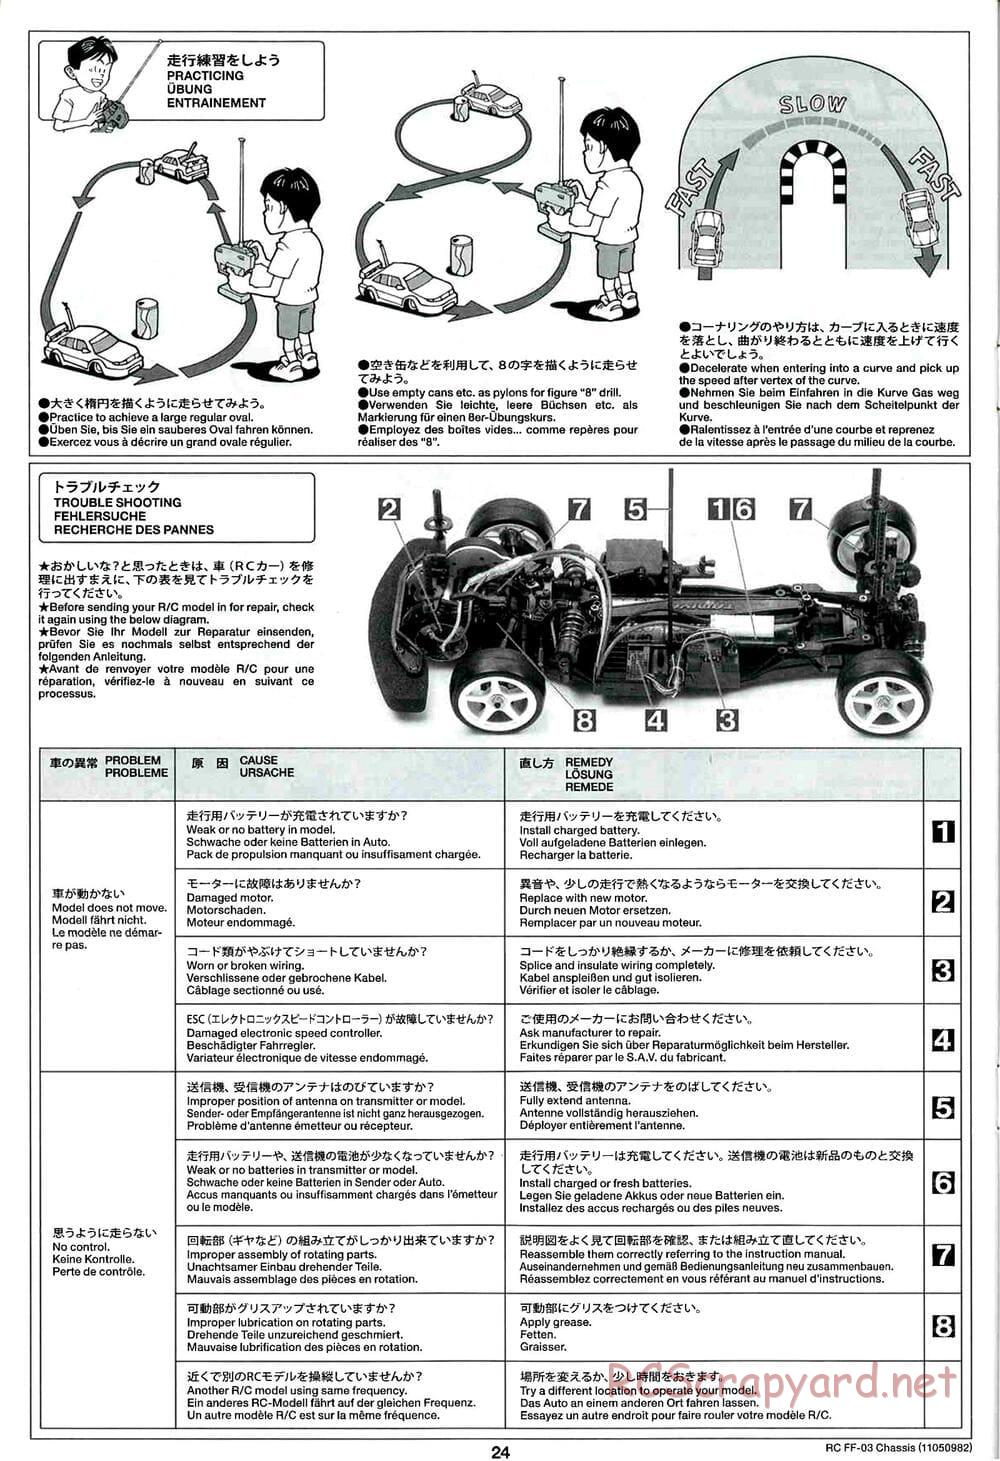 Tamiya - Castrol Honda Civic VTi - FF-03 Chassis - Manual - Page 24